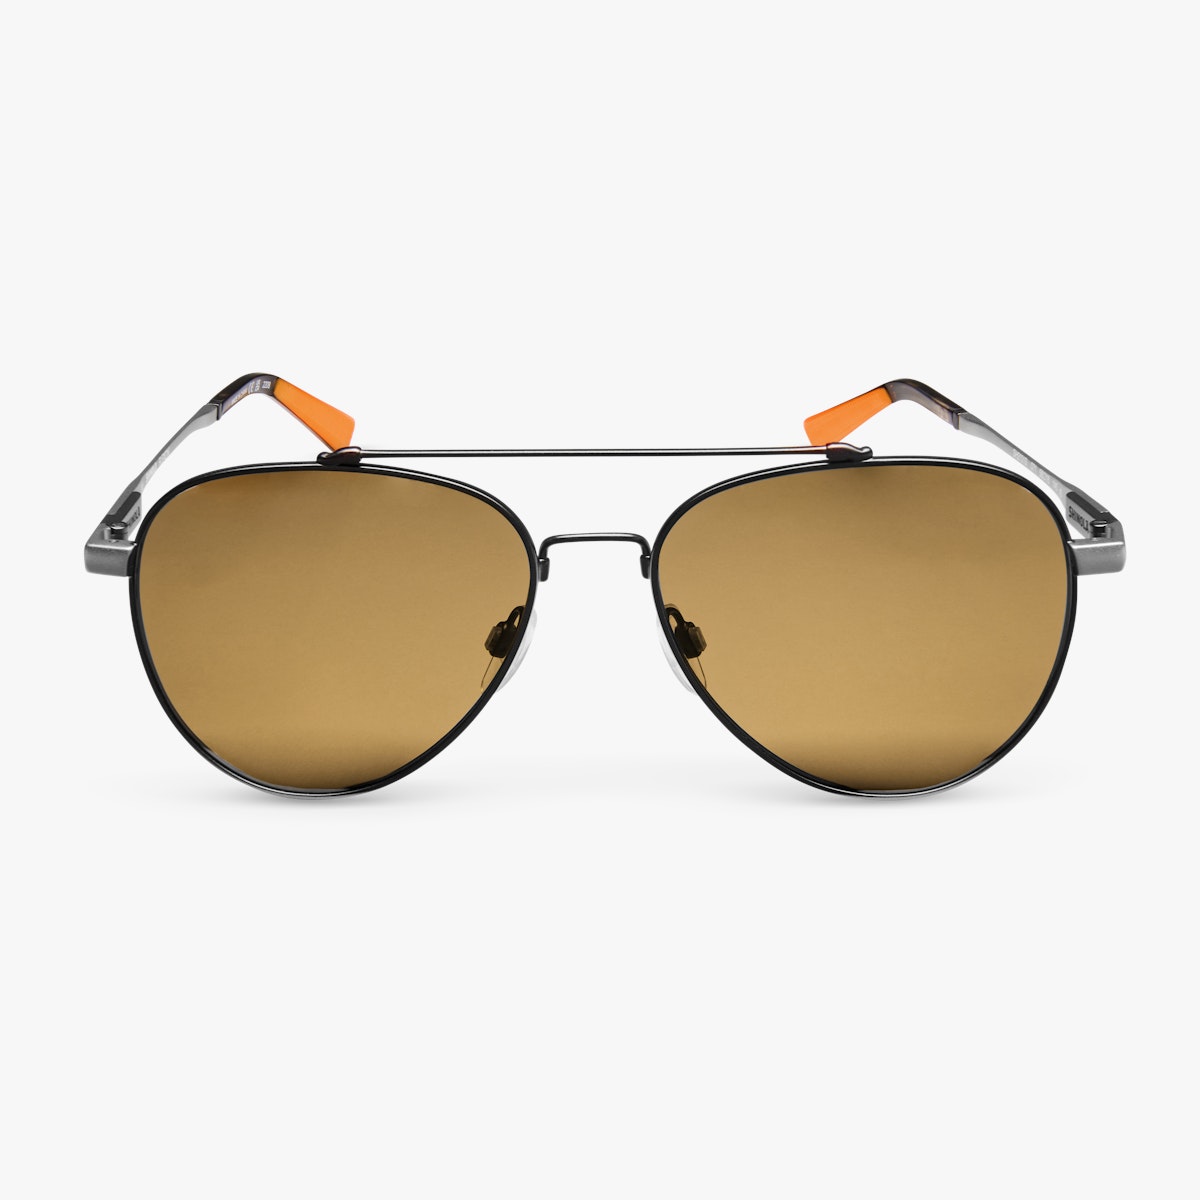 Best aviator sunglasses for men. 